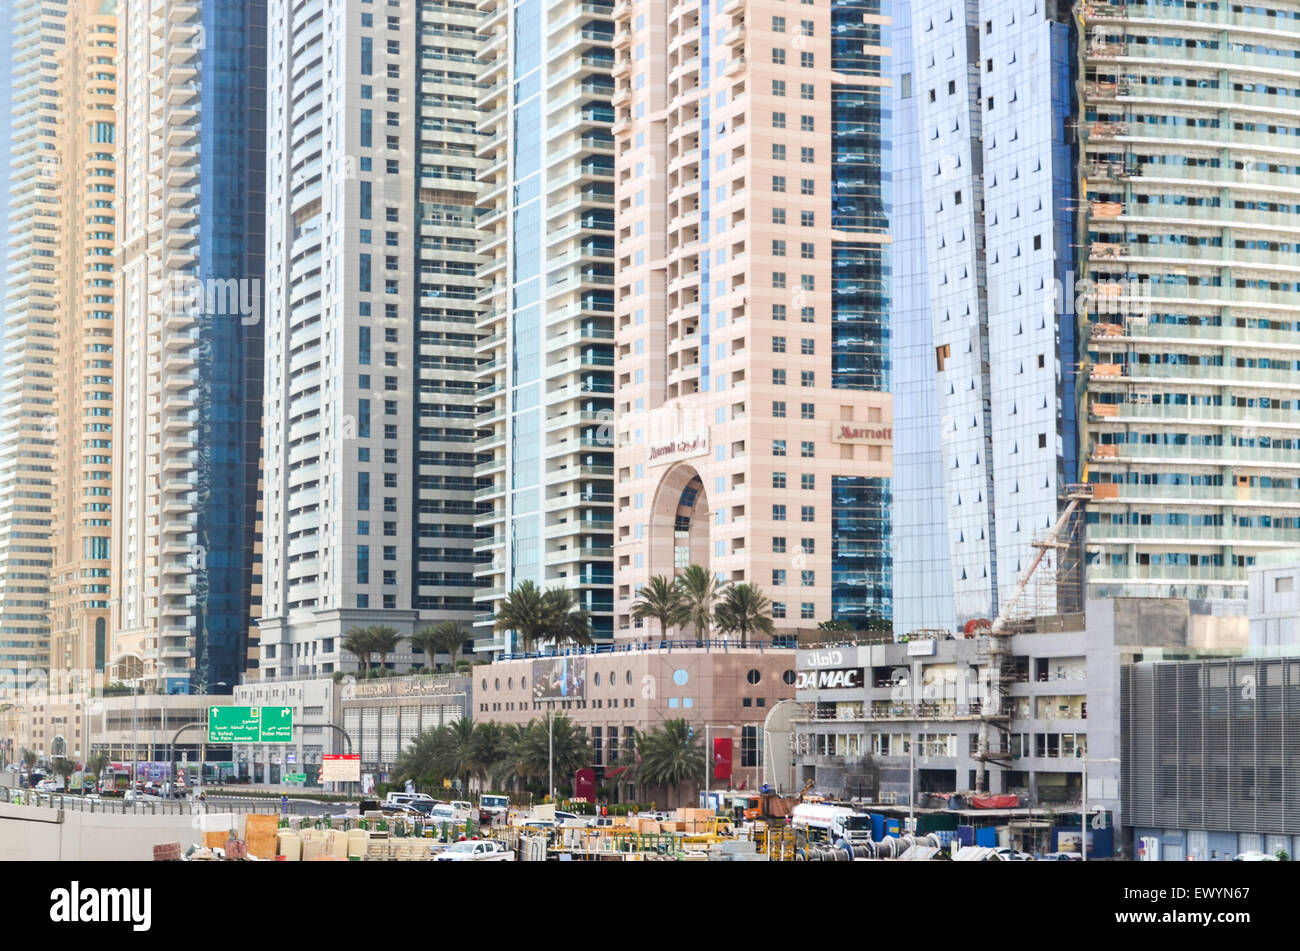 Basis des höchsten Blocks in der Welt - Dubai Marina, Vereinigte Arabische Emirate, mit mehrere Hochhäuser von durchschnittlich 400 m hoch Stockfoto